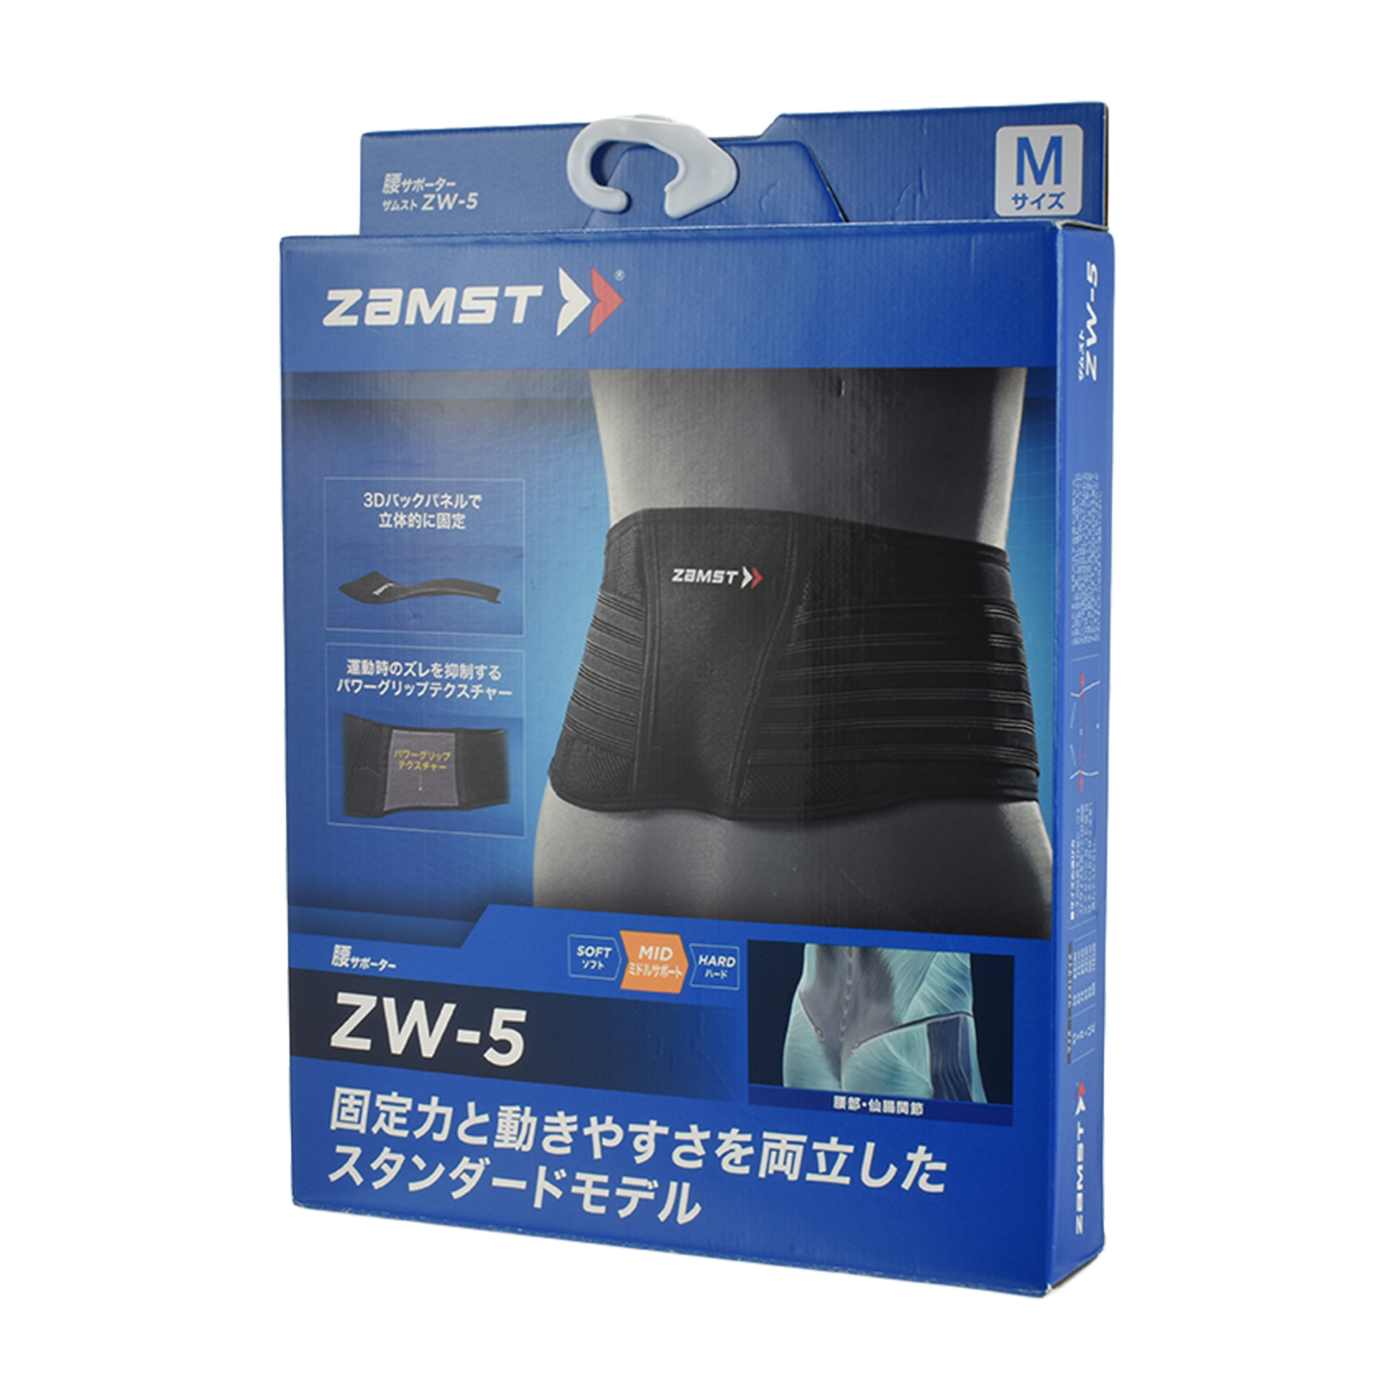 ZAMSTザムスト ZW-5 腰用サポーター サイズS 65-75cm 【代引不可】